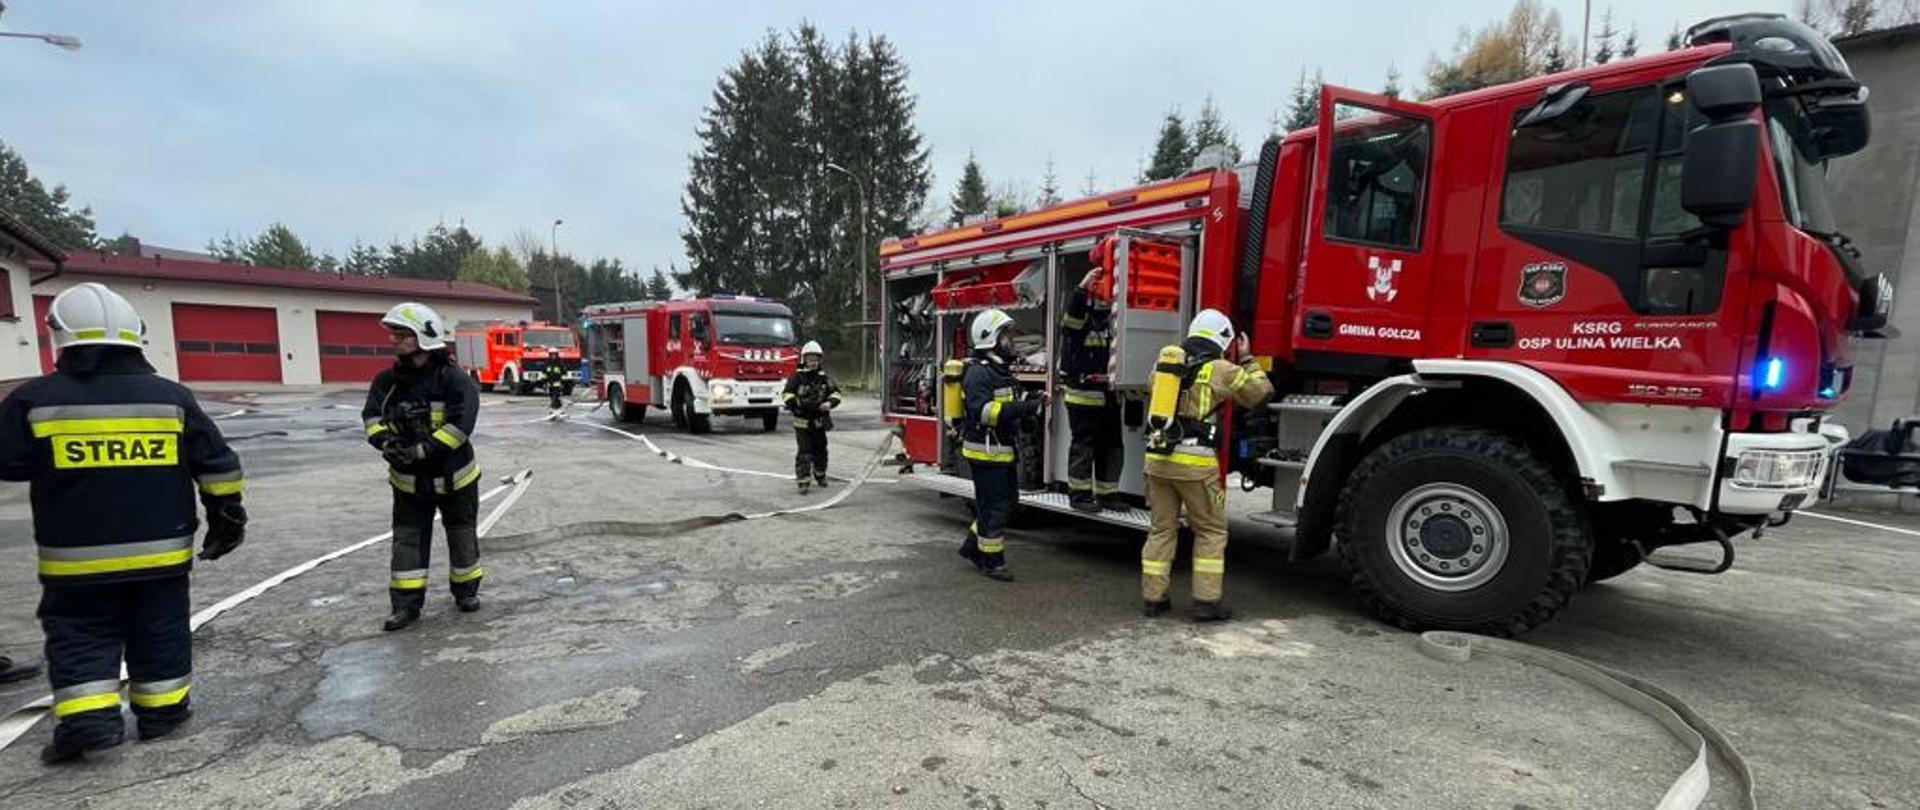 Na zdjęciu widoczni strażacy OSP oraz wozy strażackie podczas ćwiczeń